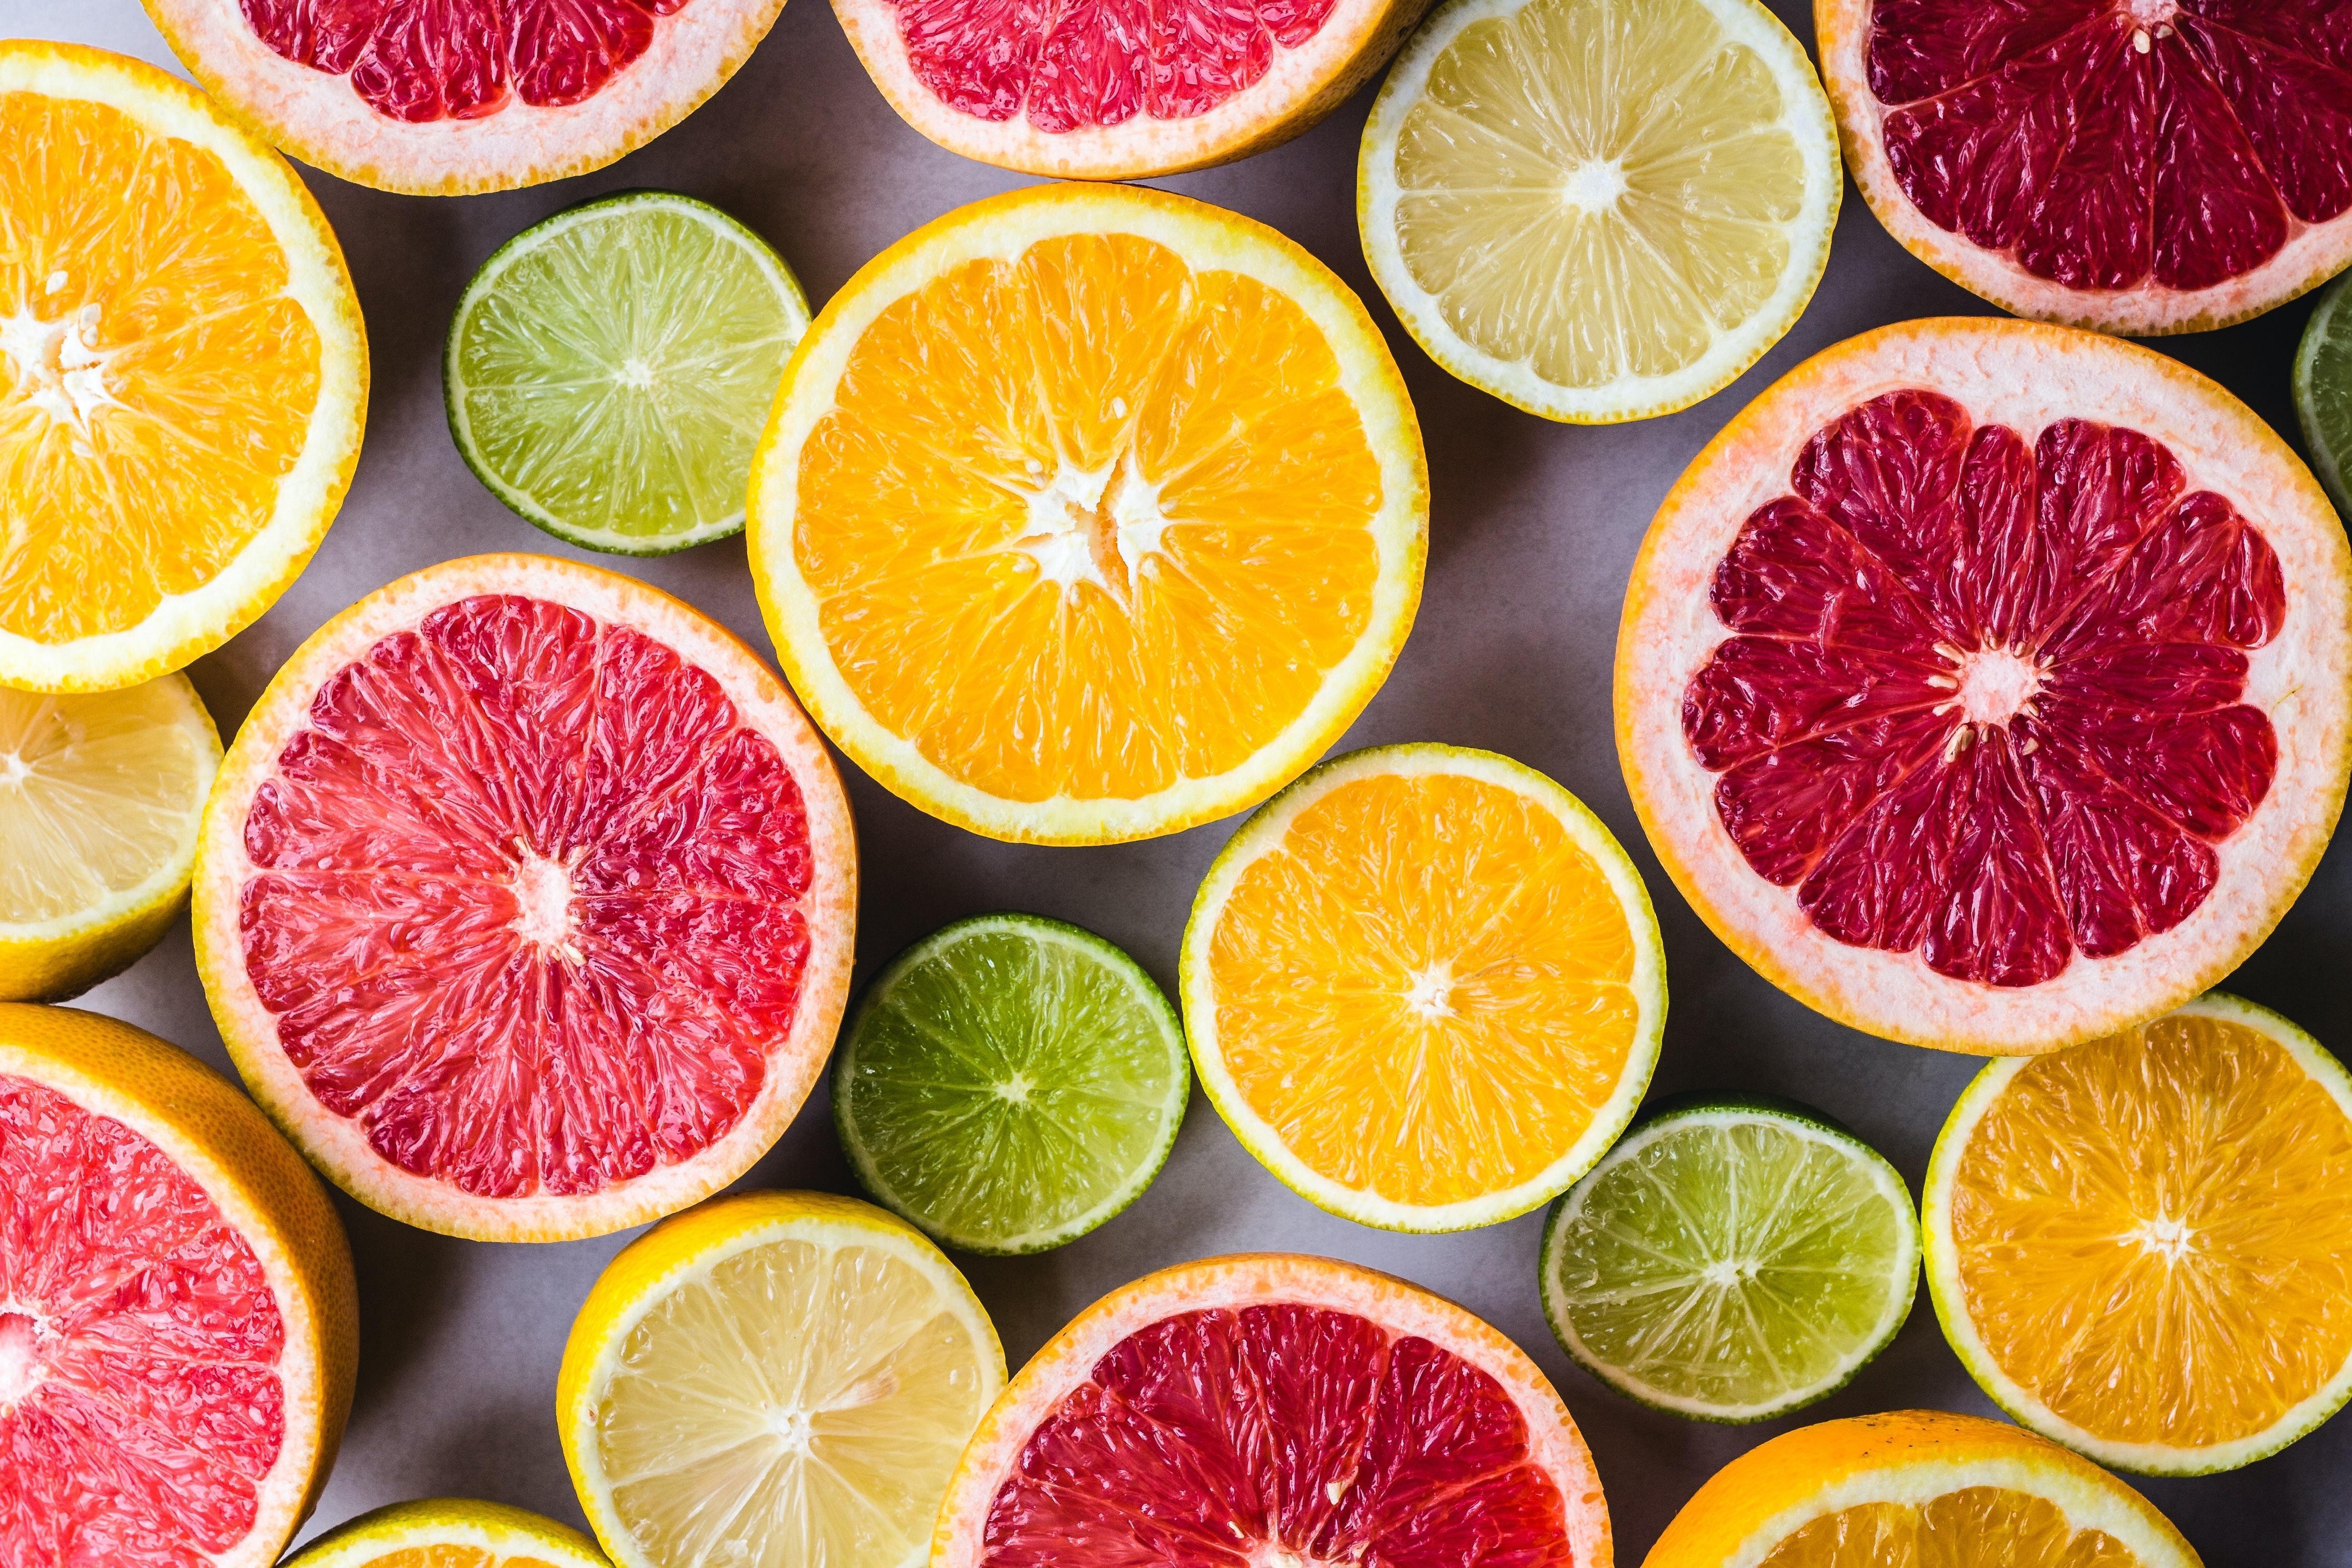 Por qué la vitamina C es tan importante y cómo lograr que tu cuerpo la asimile mejor